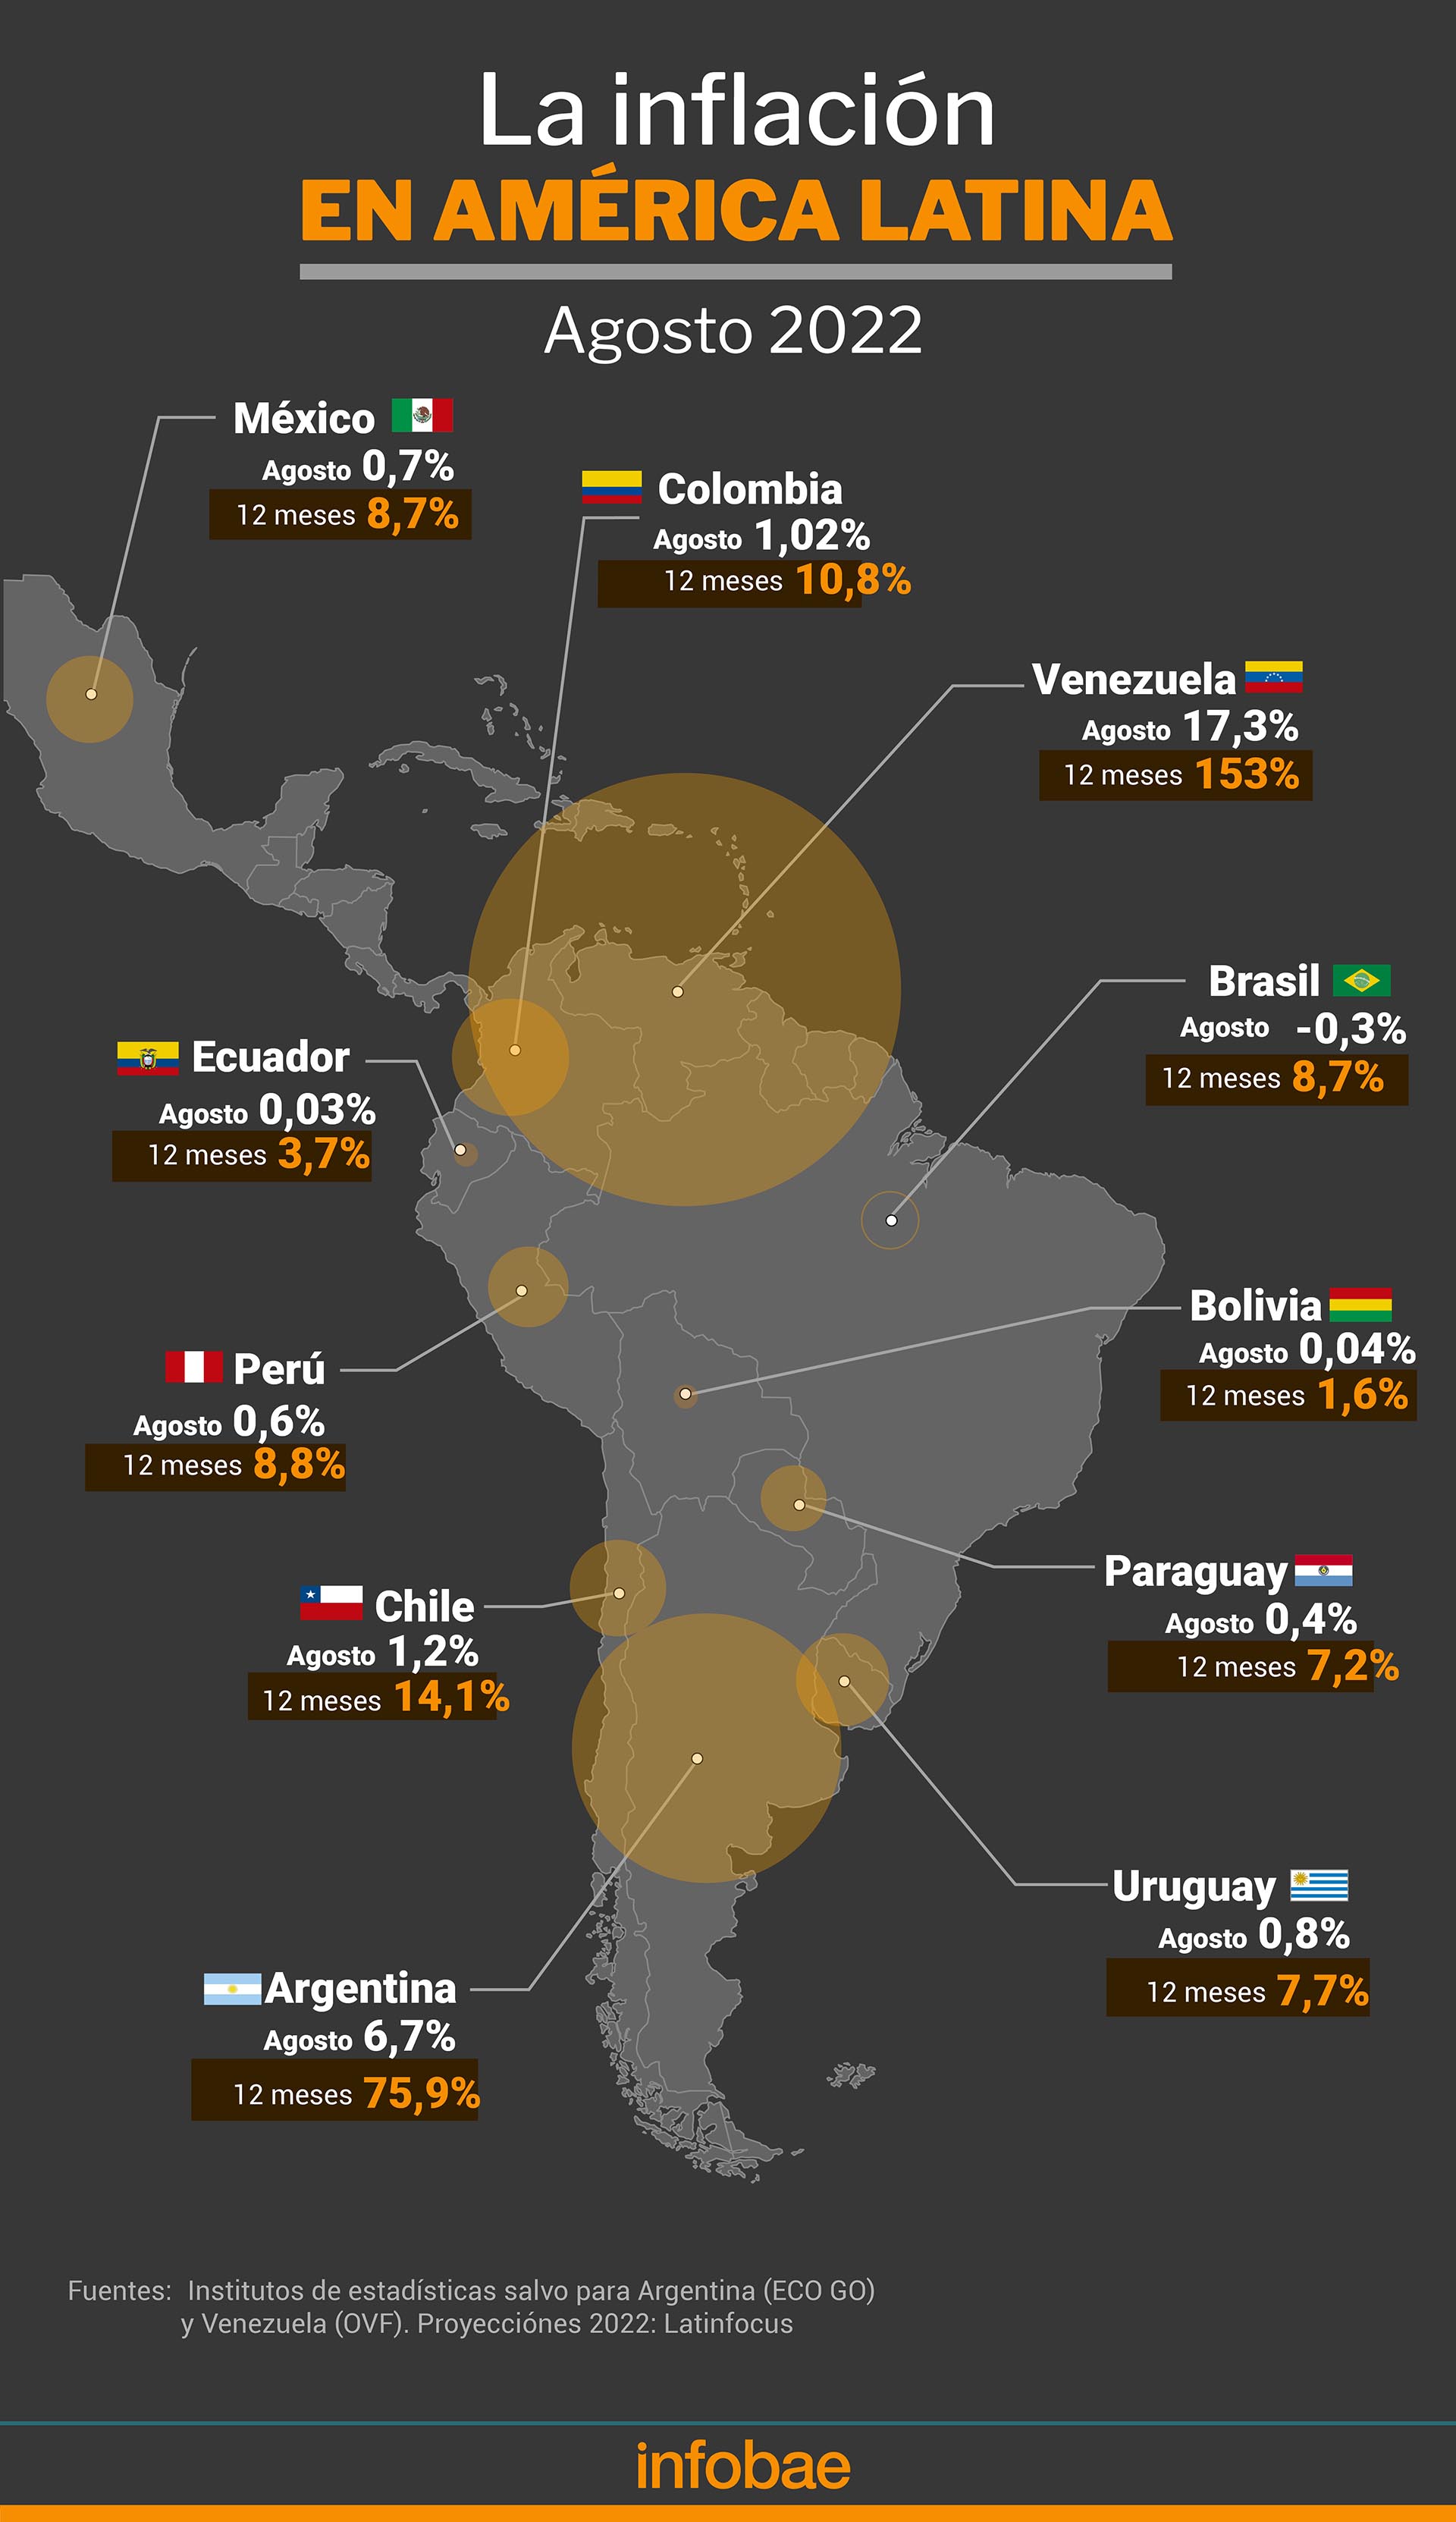 La inflación de agosto en América latina
Infografía de Marcelo Regalado